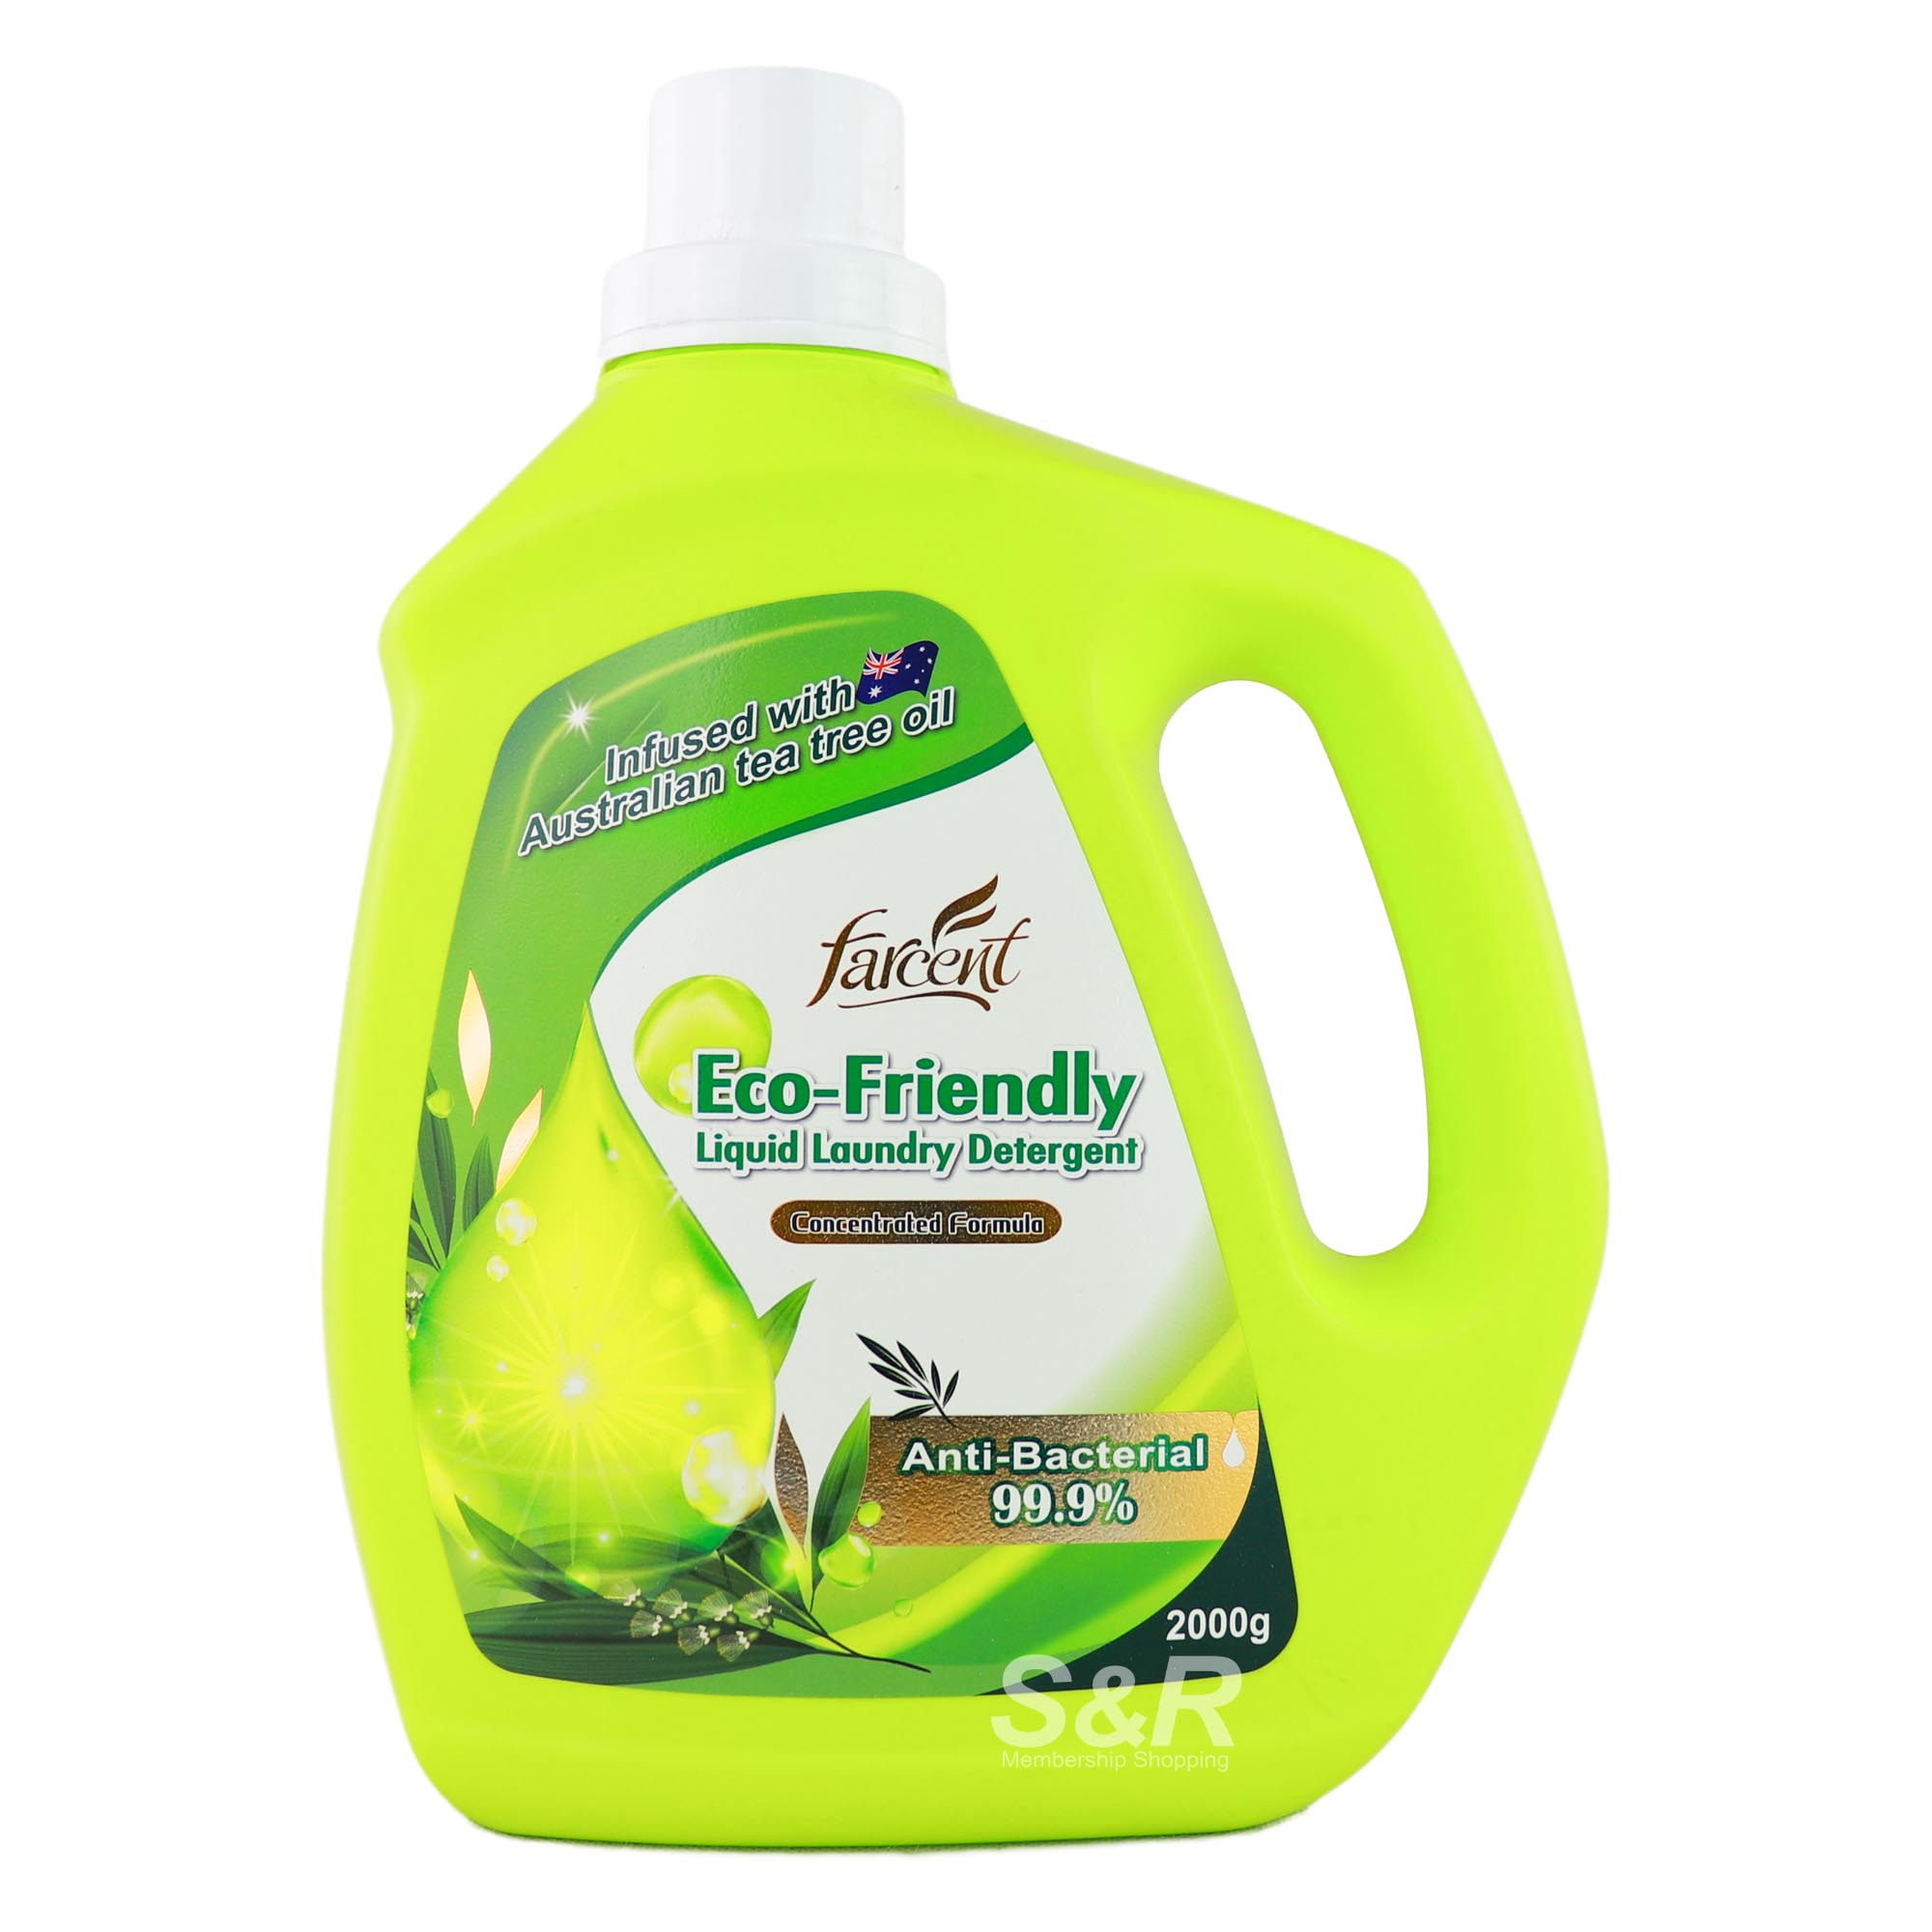 Farcent Eco-Friendly Liquid Laundry Detergent 2kg